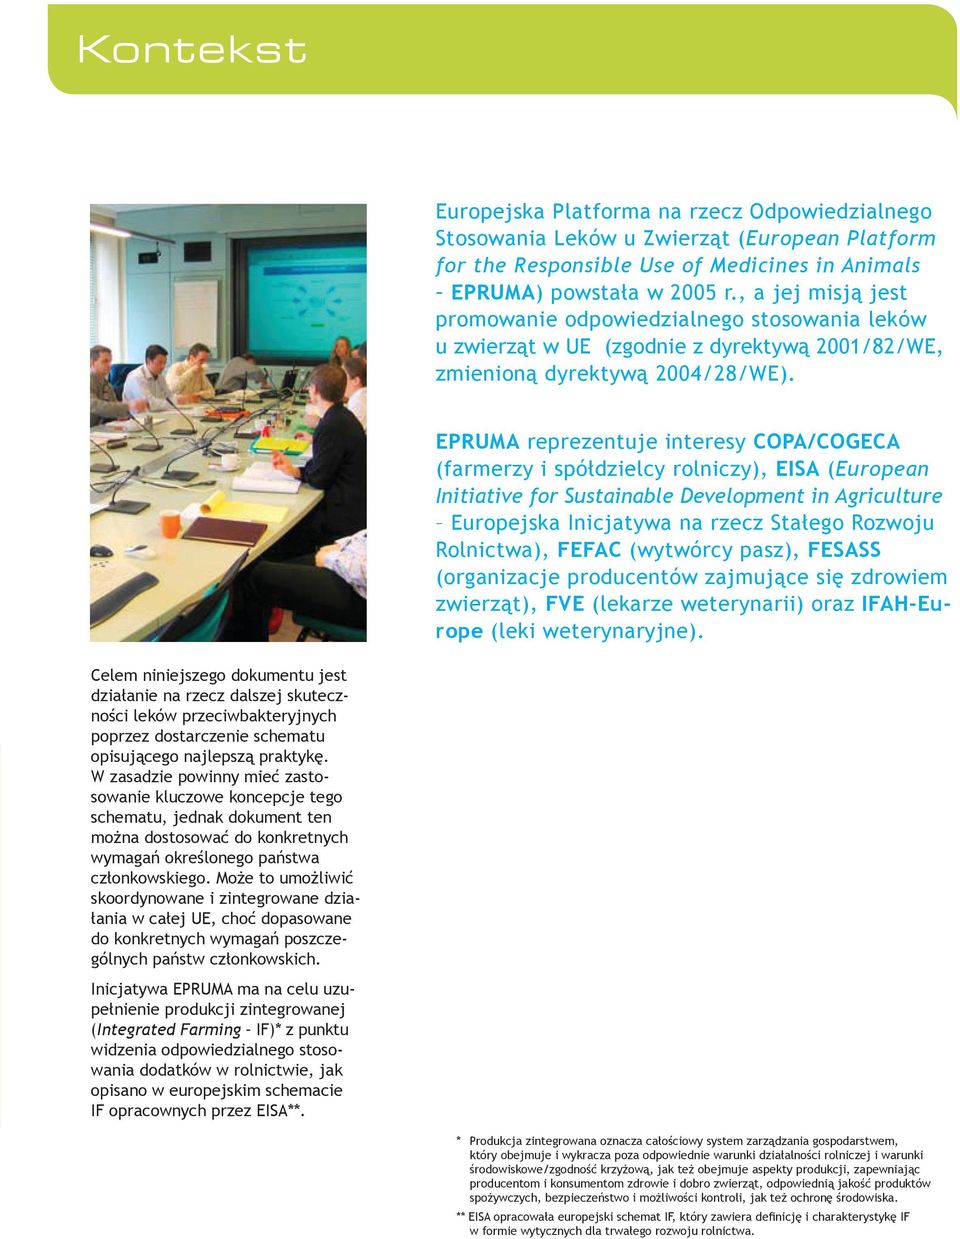 EPRUMA reprezentuje interesy COPA/COGECA (farmerzy i spółdzielcy rolniczy), EISA (European Initiative for Sustainable Development in Agriculture Europejska Inicjatywa na rzecz Stałego Rozwoju